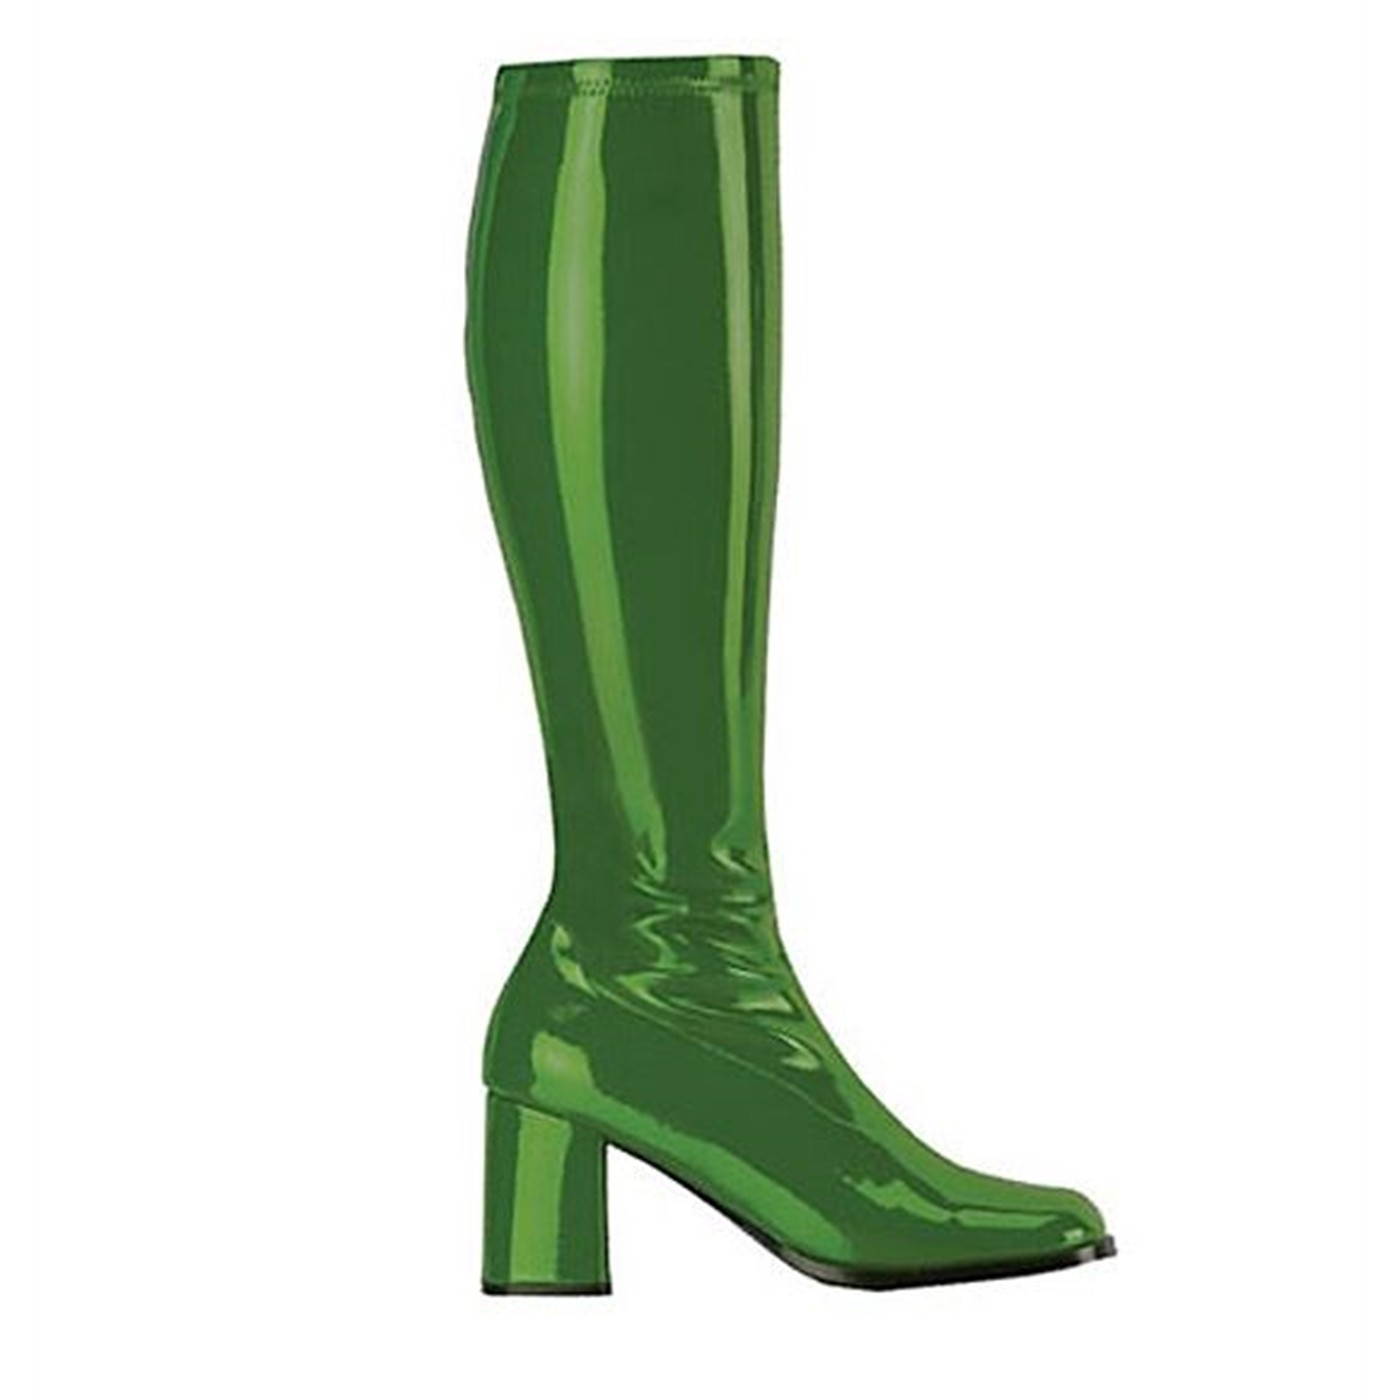 Hero Green GO GO Boots 3 Inch Heel